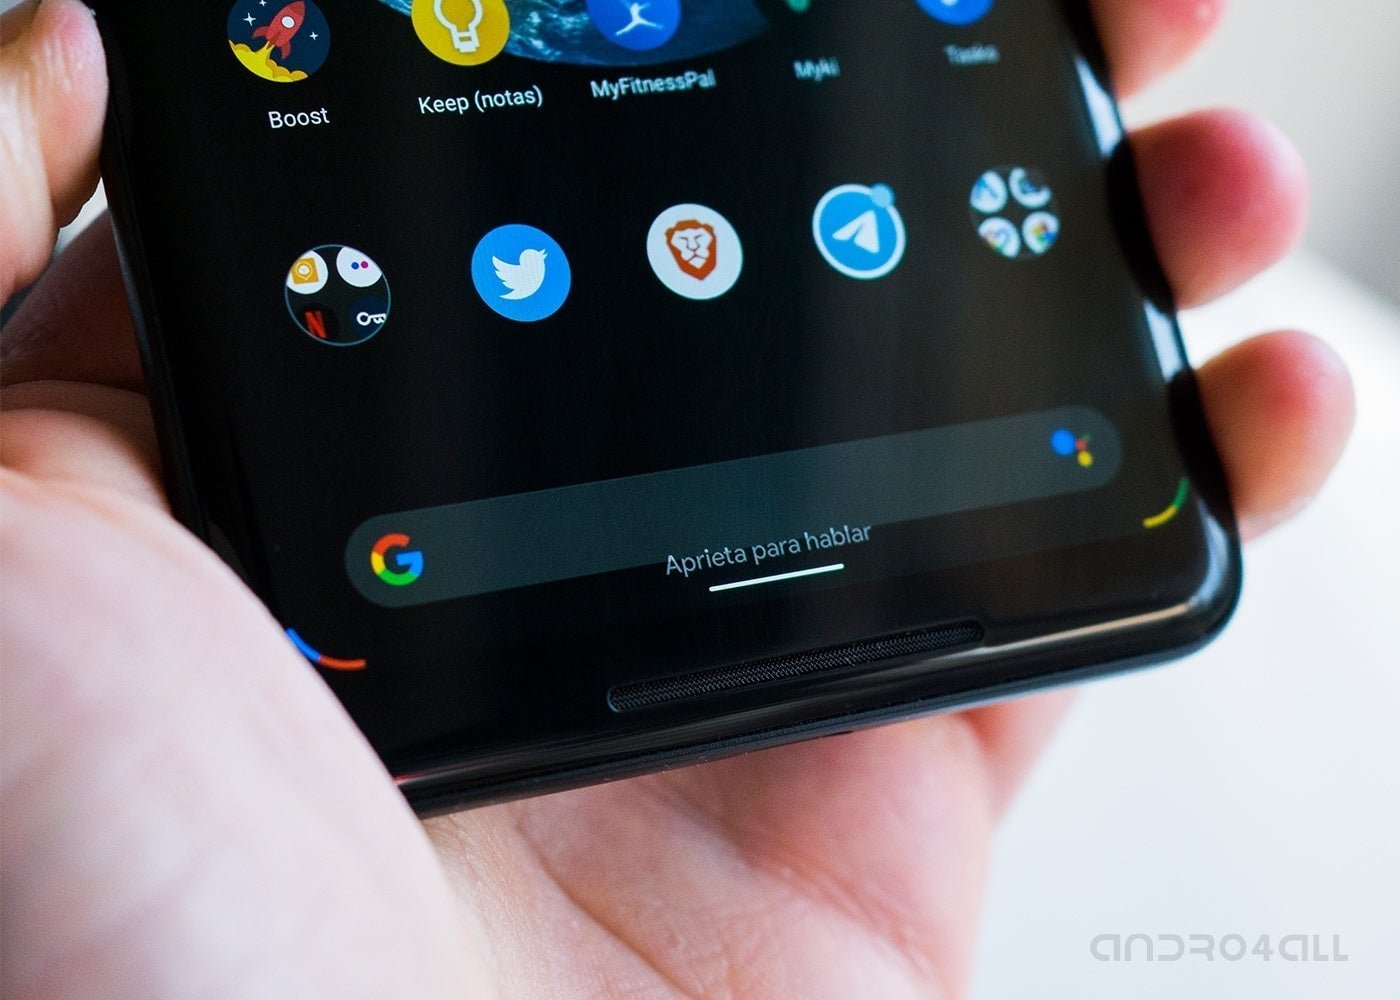 Android Q Beta 5, aprieta para hablar